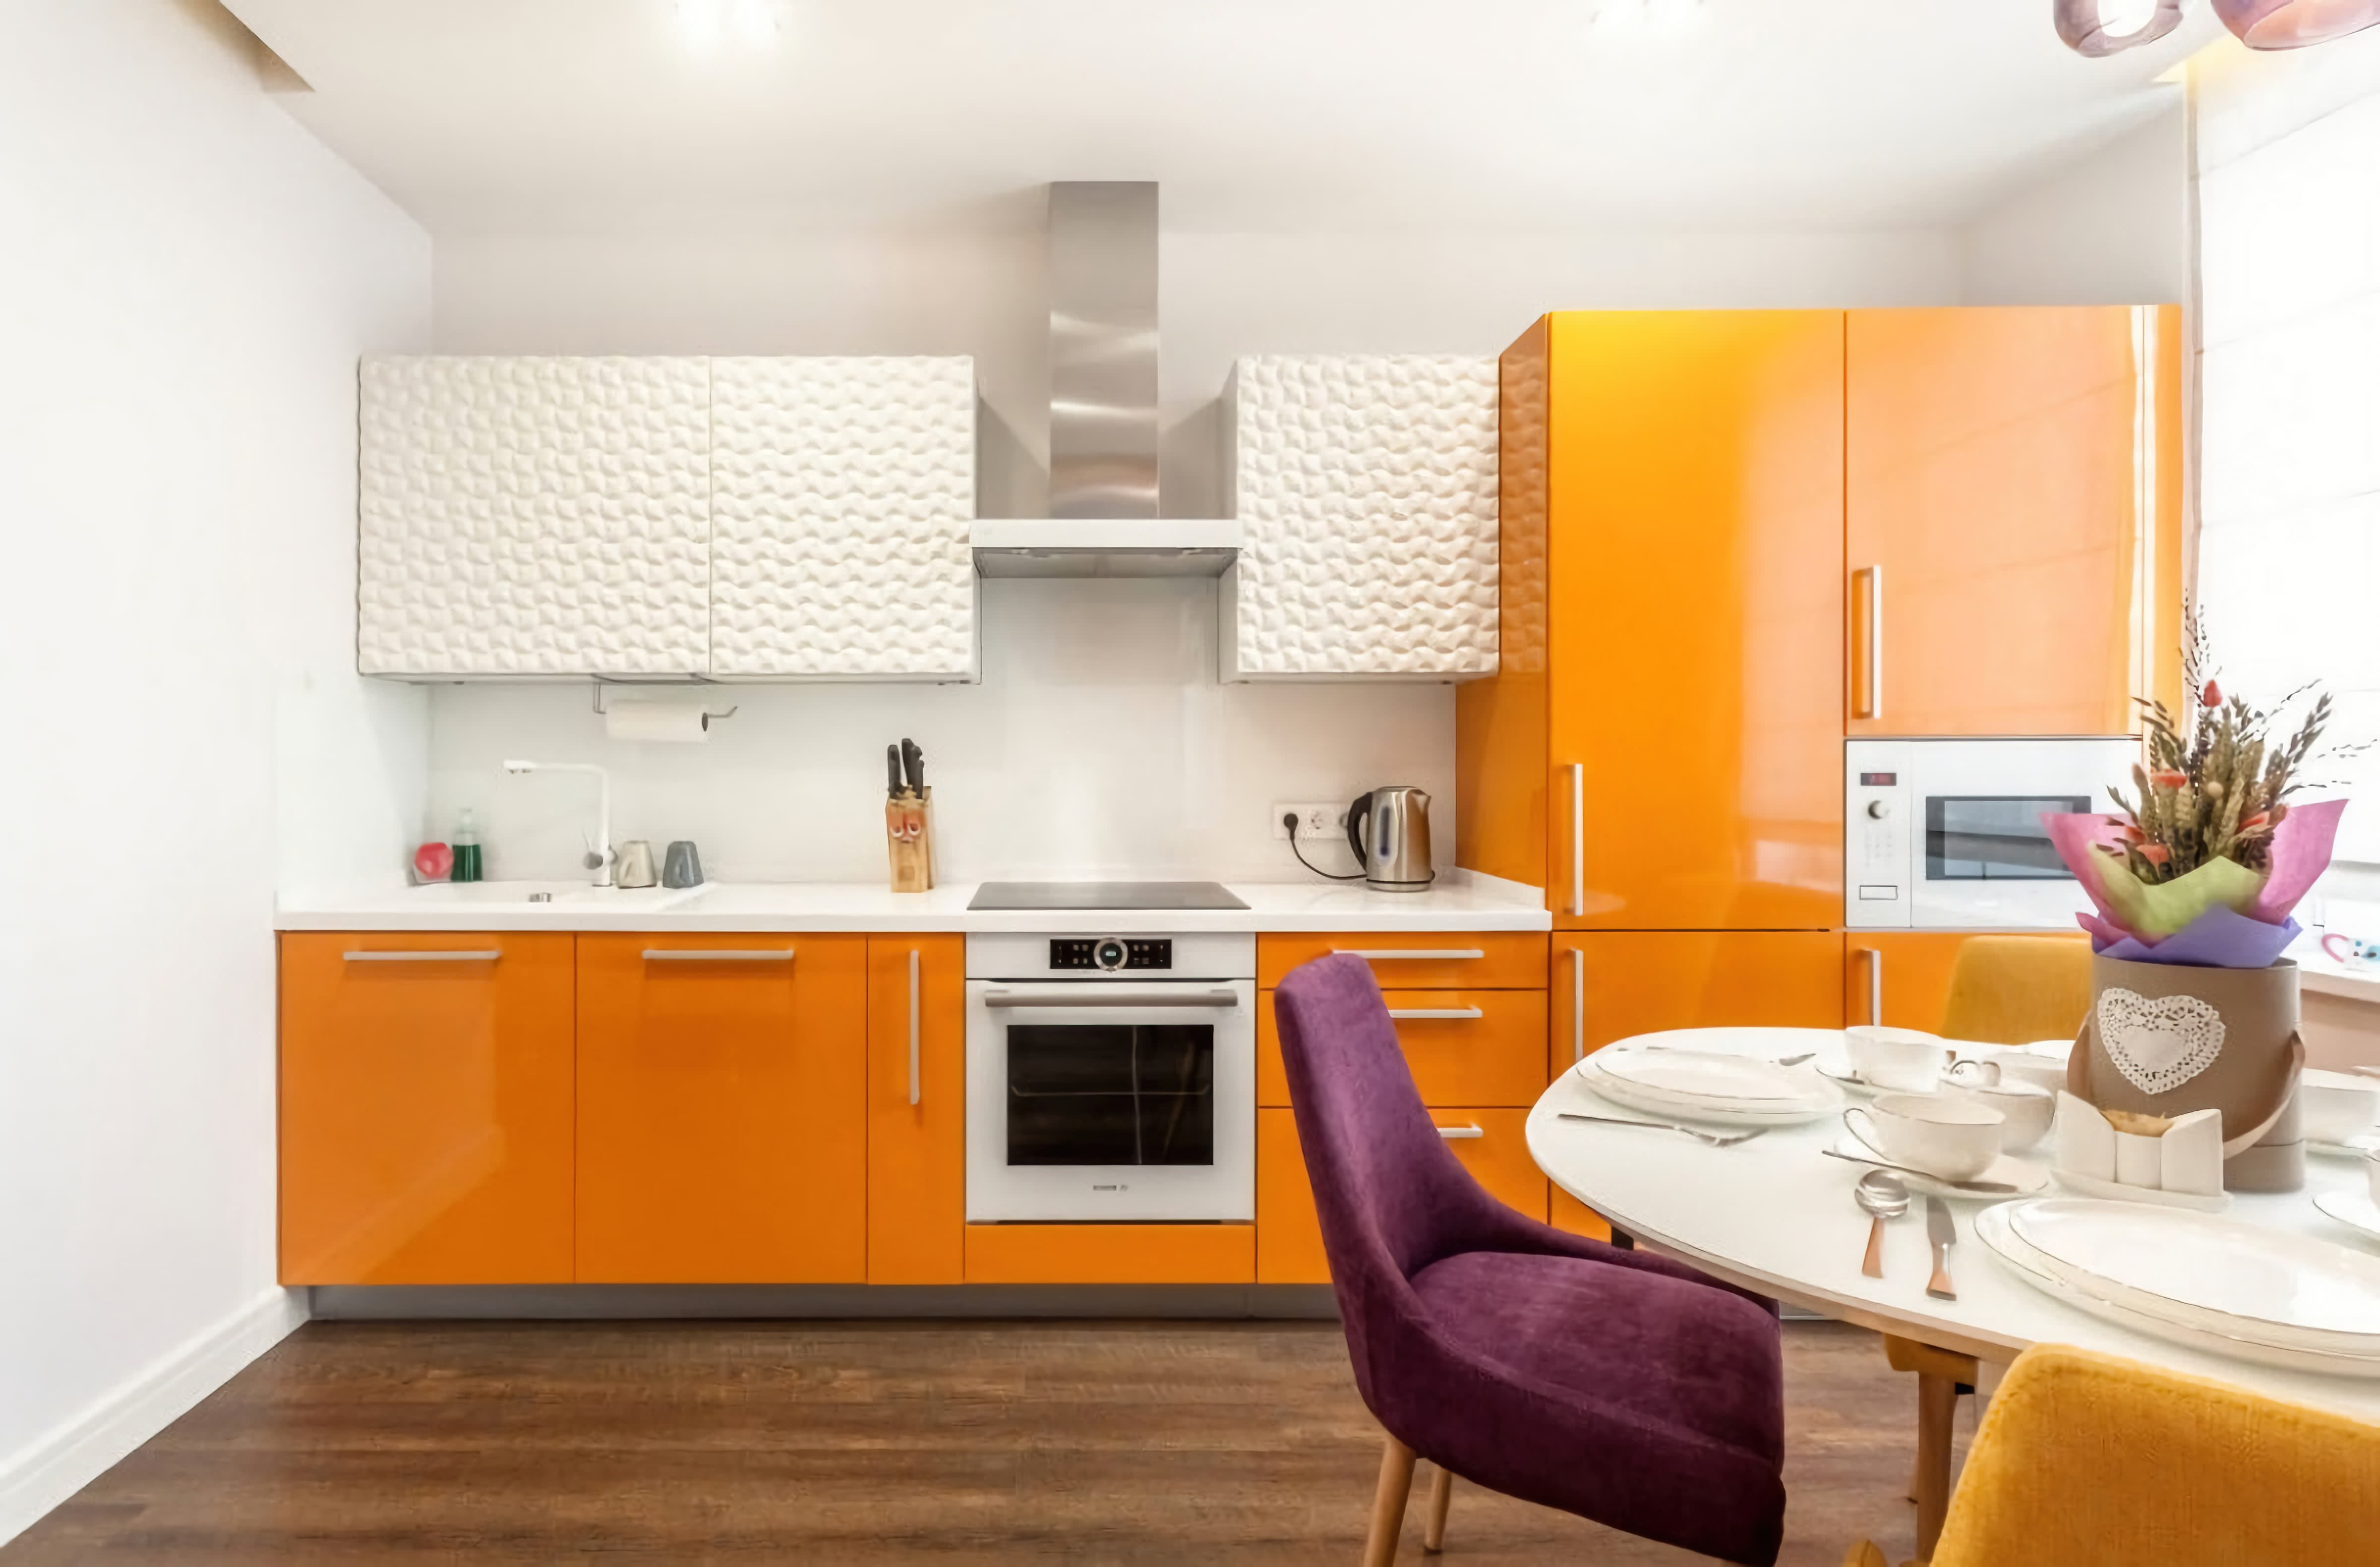 Кухни така. Интерьер кухни в оранжевых тонах. Кухни оранжевого цвета. Кухонный гарнитур оранжевый с белым. Оранжевая кухня в интерьере.